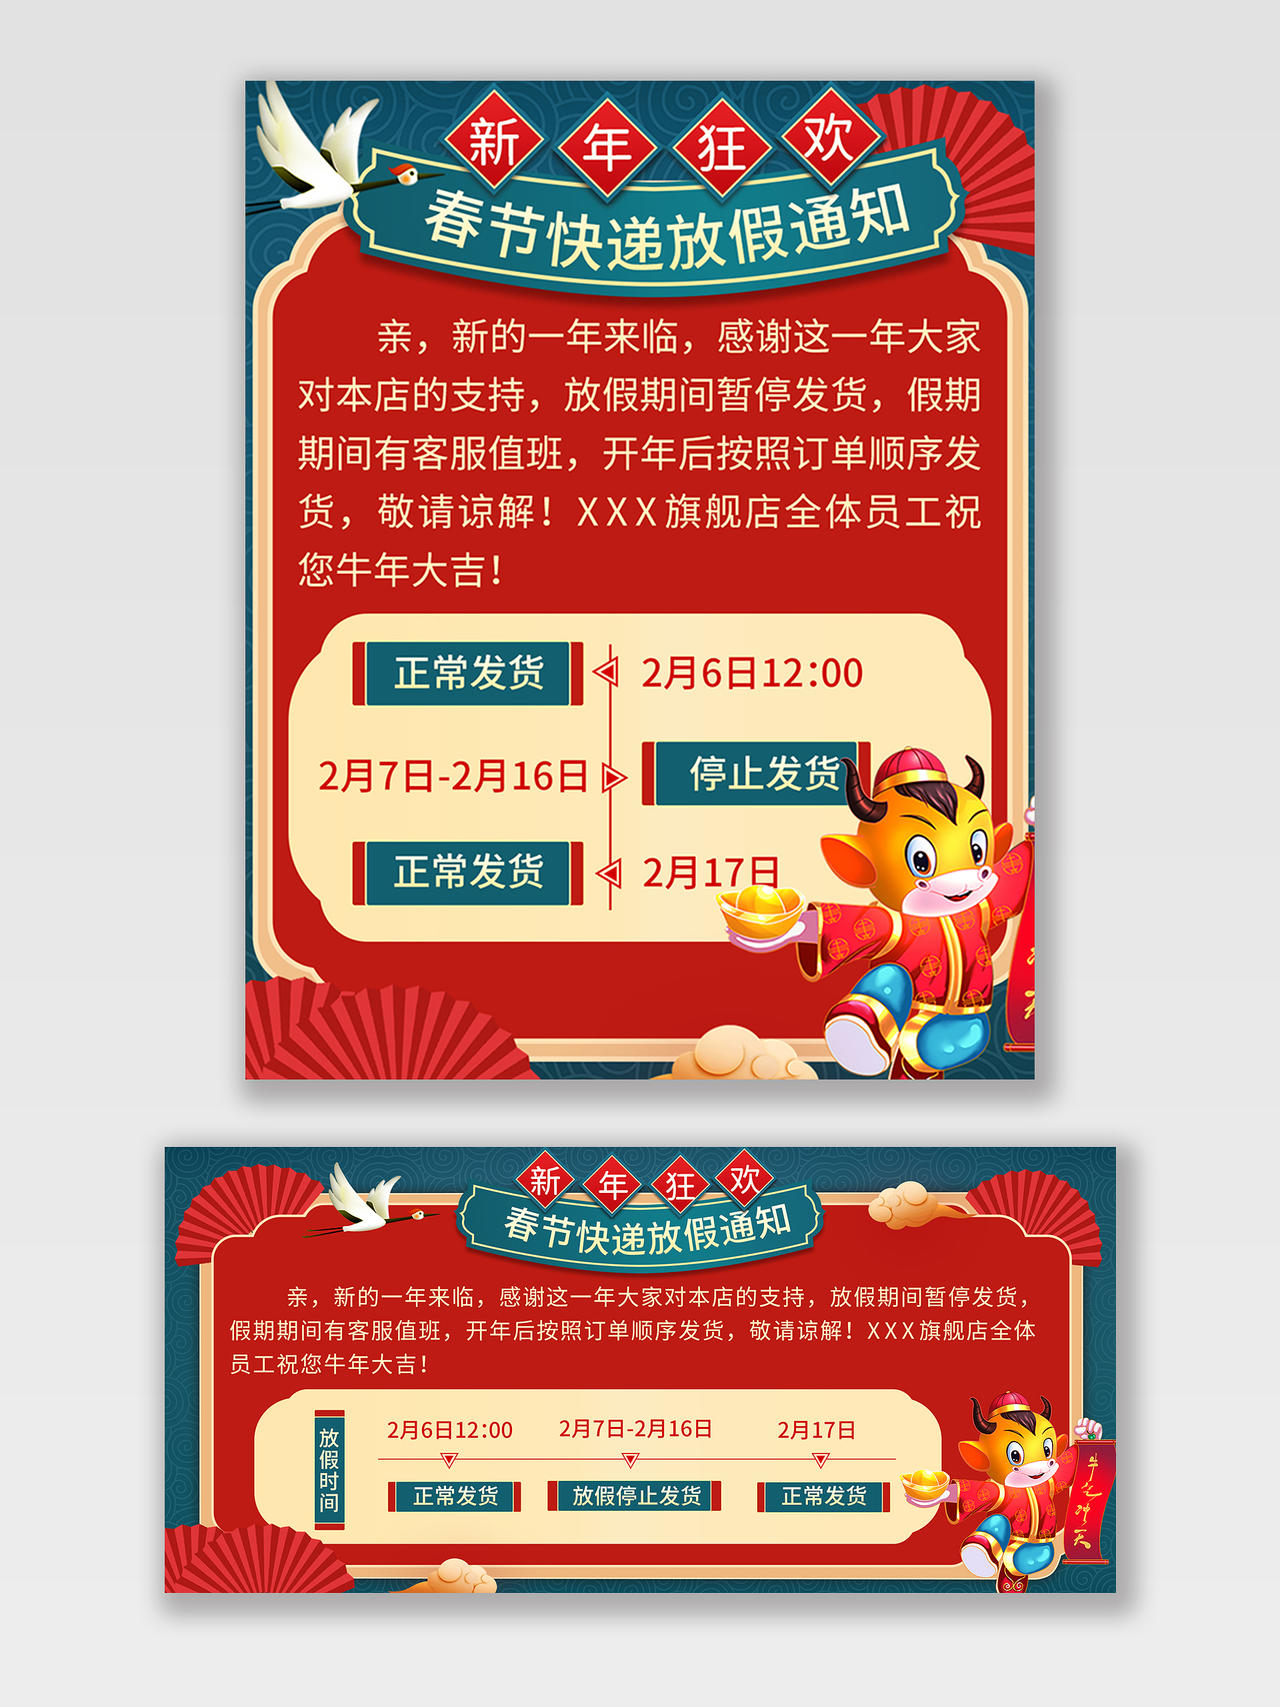 红色中国风电商春节放假通知春节放假通知海报banner